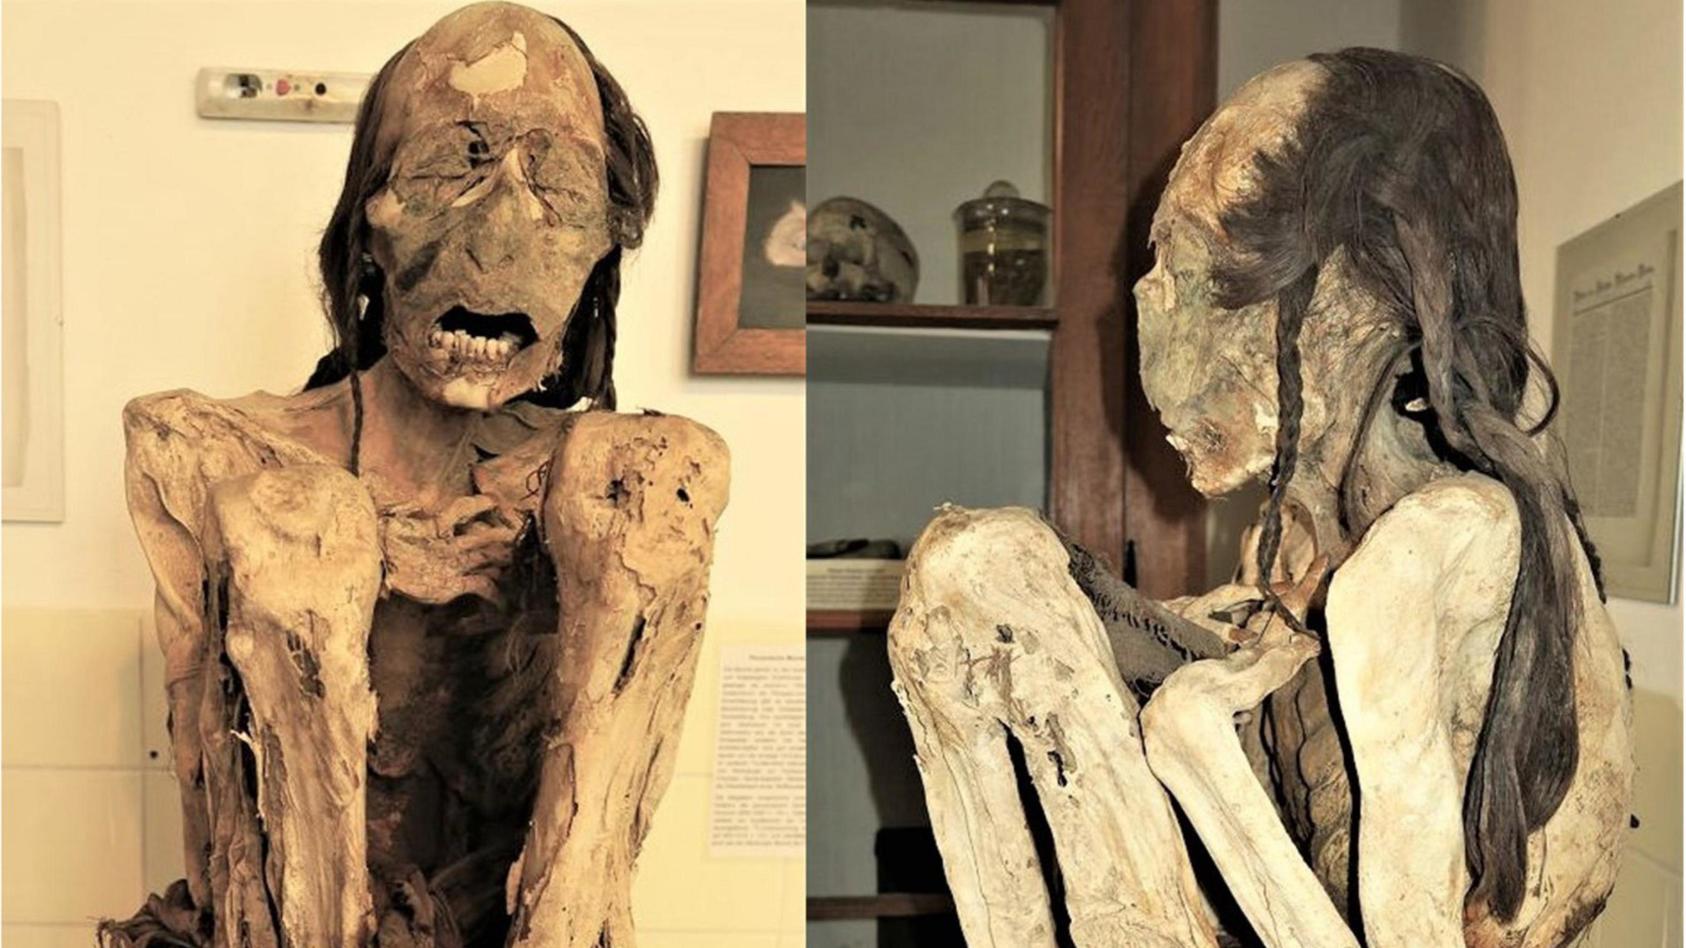 HANDOUT - 09.09.2022, Marburg: Die Marburger männliche Mumie. In wissenschaftlicher Detektivarbeit haben Forscher den Hergang etwa tausend Jahre zurückliegender tödlicher Verbrechen aufgedeckt. Sie untersuchten südamerikanische Mumien im 3D-Computert